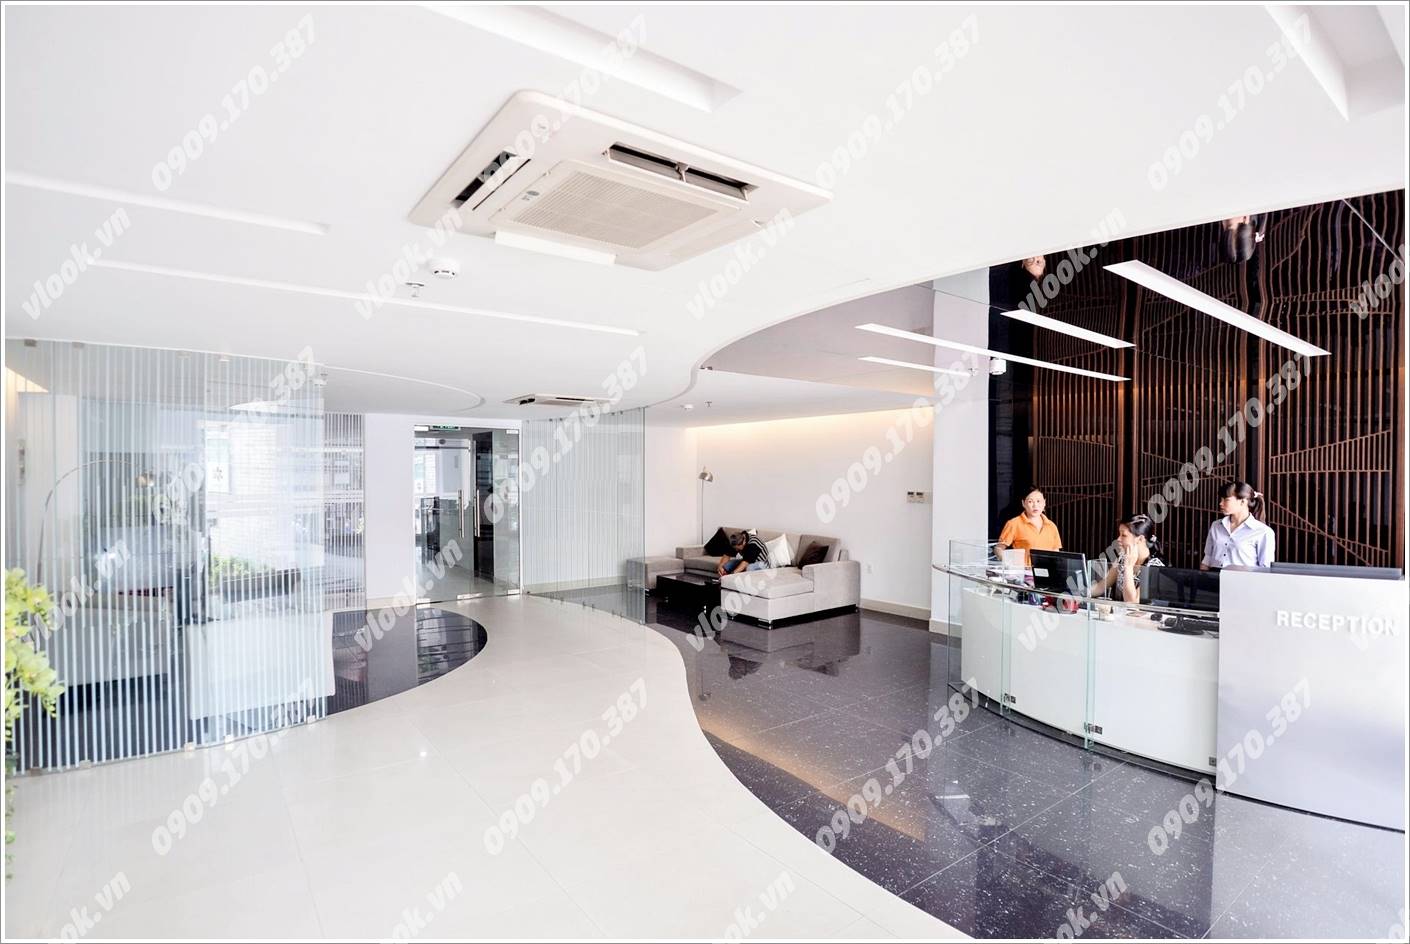 Cao ốc văn phòng cho thuê tòa nhà Vinatafs Tower, Điện Biên Phủ, Quận 10, TP.HCM - vlook.vn